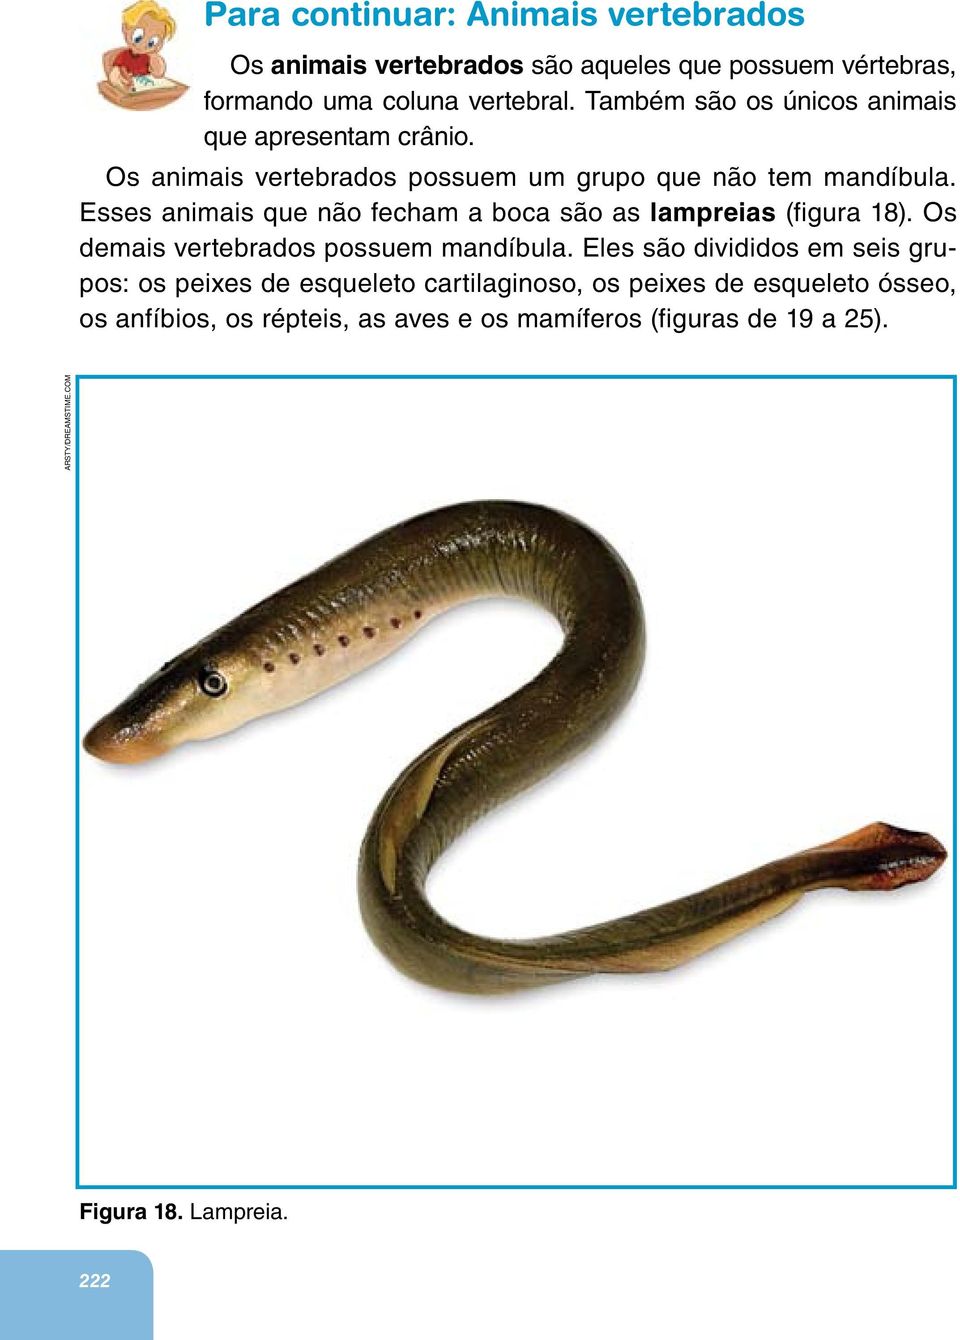 Esses animais que não fecham a boca são as lampreias (figura 18). Os demais vertebrados possuem mandíbula.